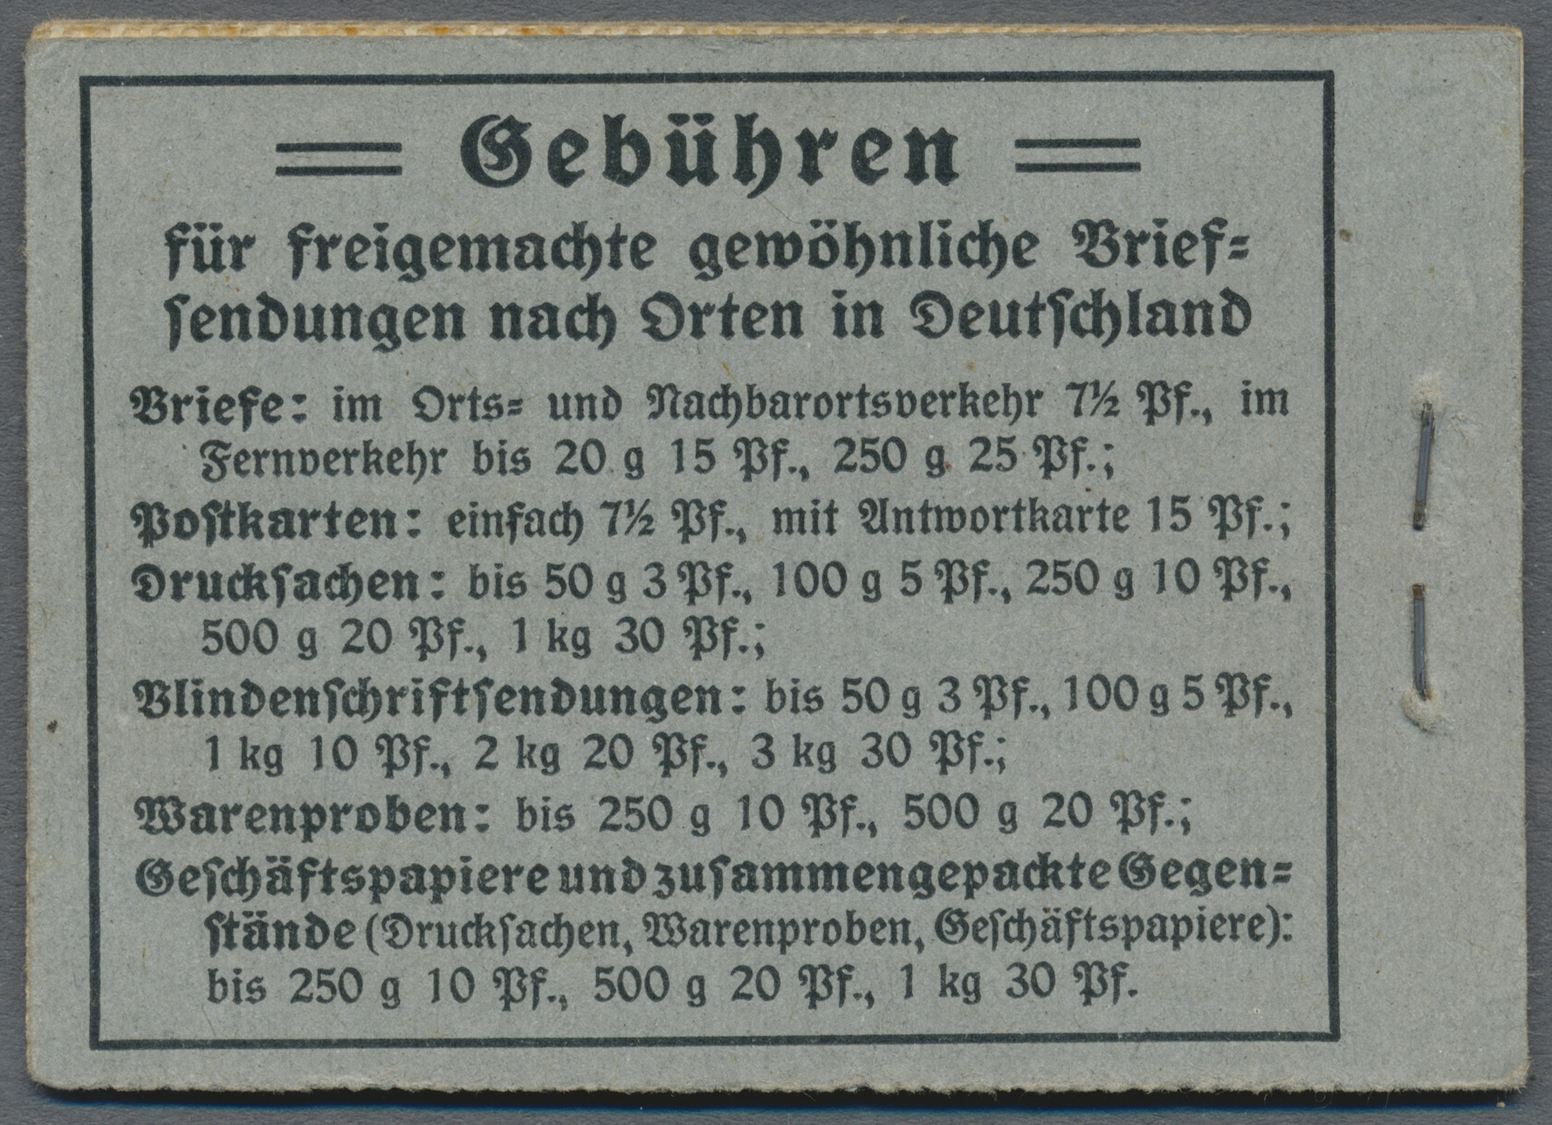 * Deutsches Reich - Markenheftchen: 1916, 75 Pfg. Germania Markenheftchen, Komplett Mit Allen Blättern - Postzegelboekjes